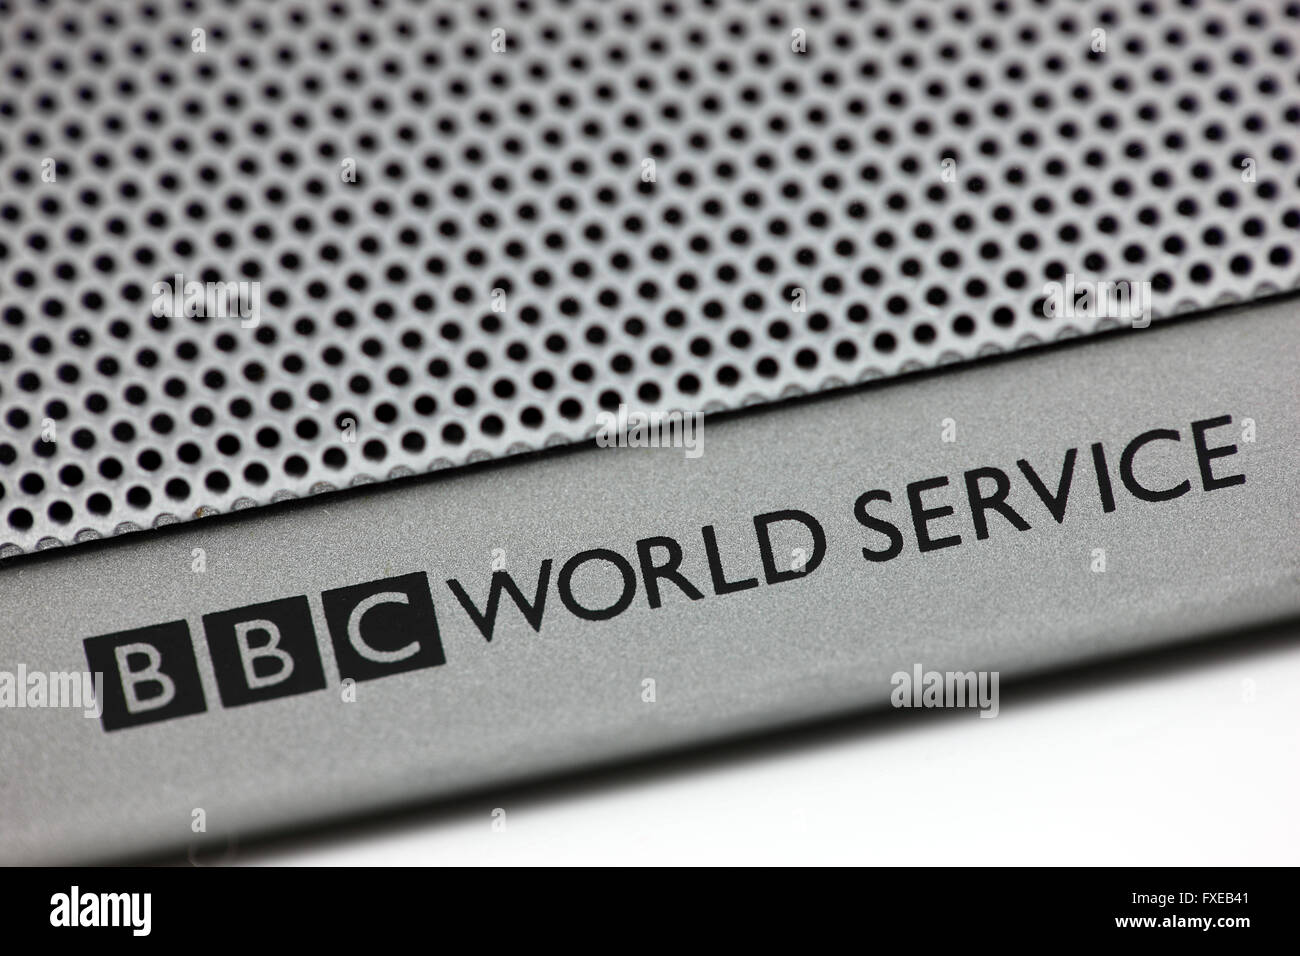 BBC World Service zu einer Sendeanlage zeigen, es könnte die Kurzwelle Kommunikation erhalten. Stockfoto